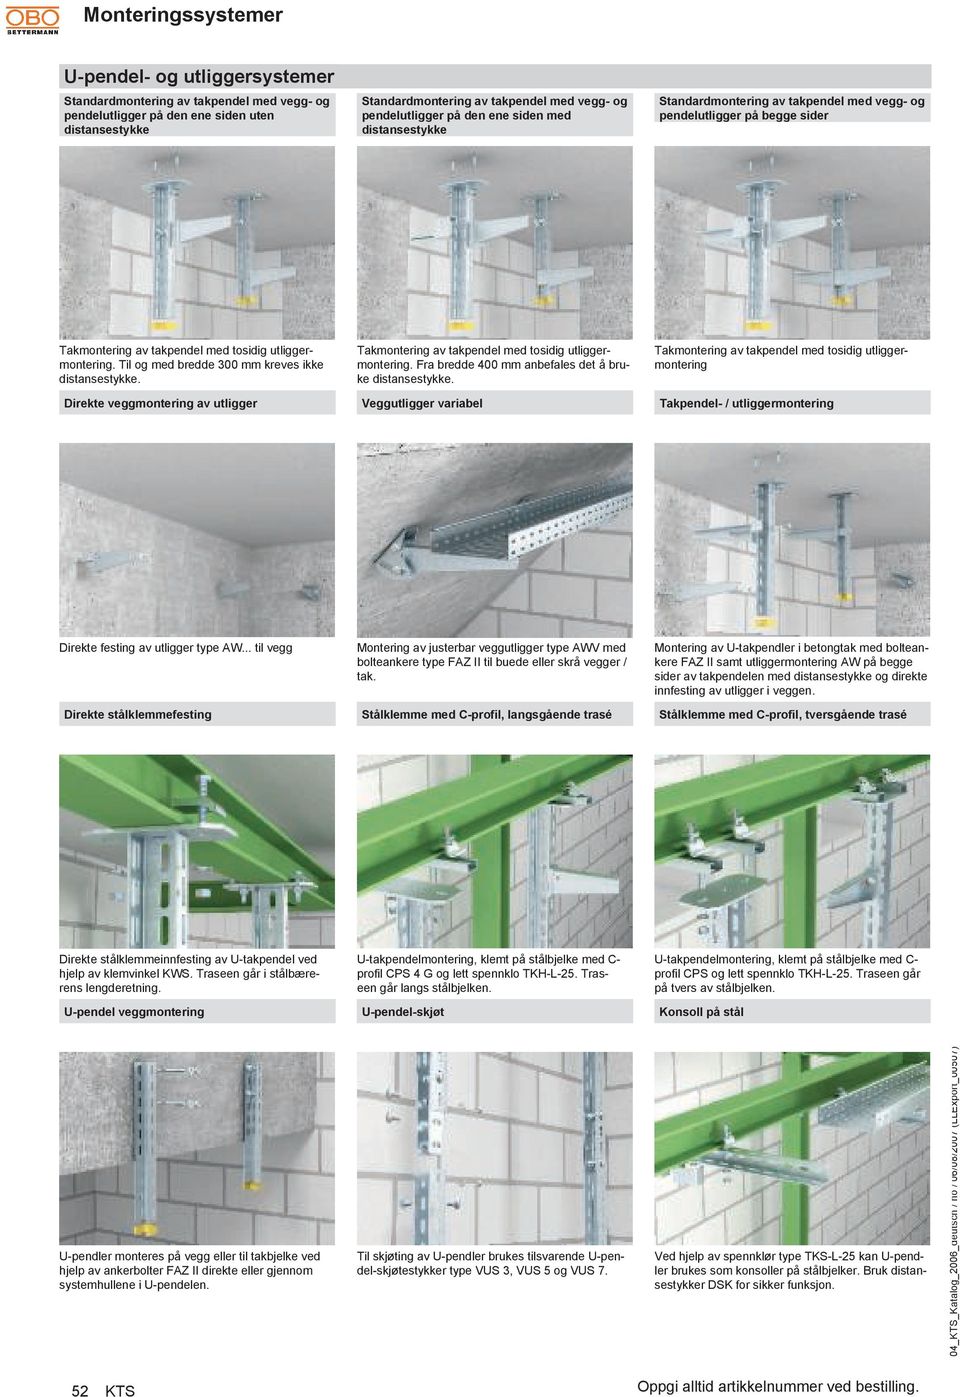 Takmontering av takpenel me tosiig utliggermontering. Fra bree 400 anbefales et å bruke istansestykke.